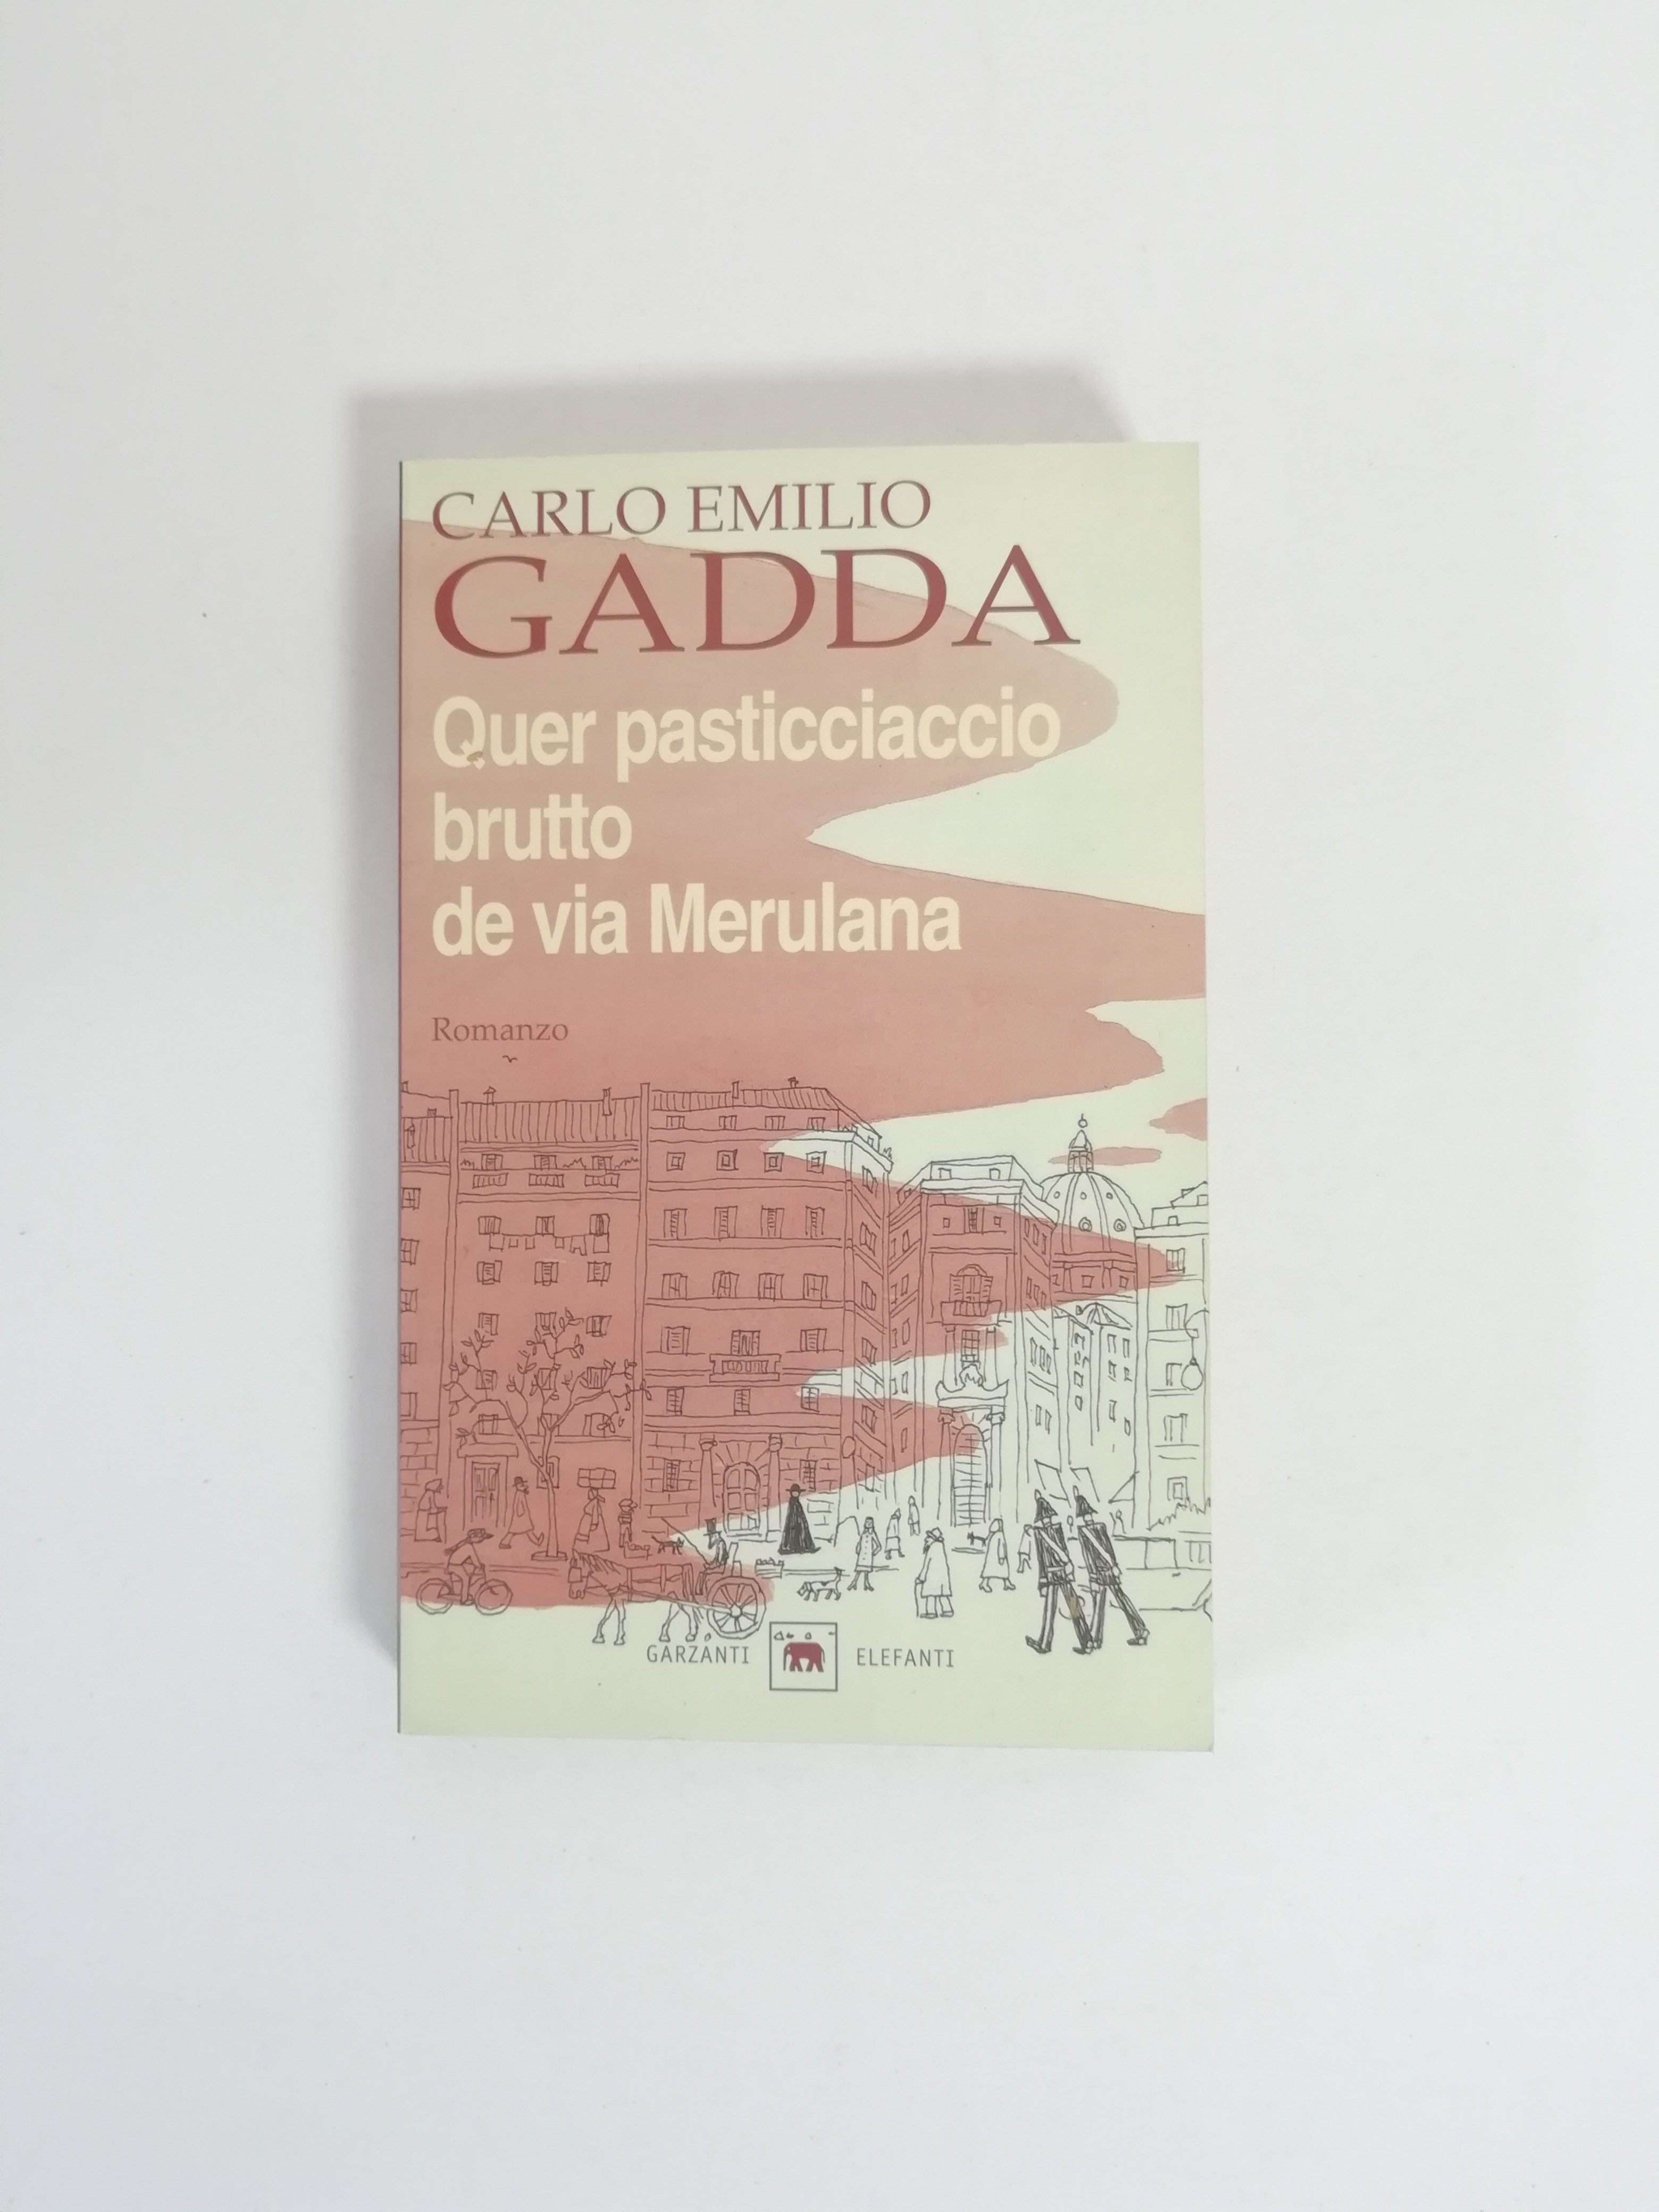 Carlo Emilio Gadda, “Quer pasticciaccio brutto de via Merulana”